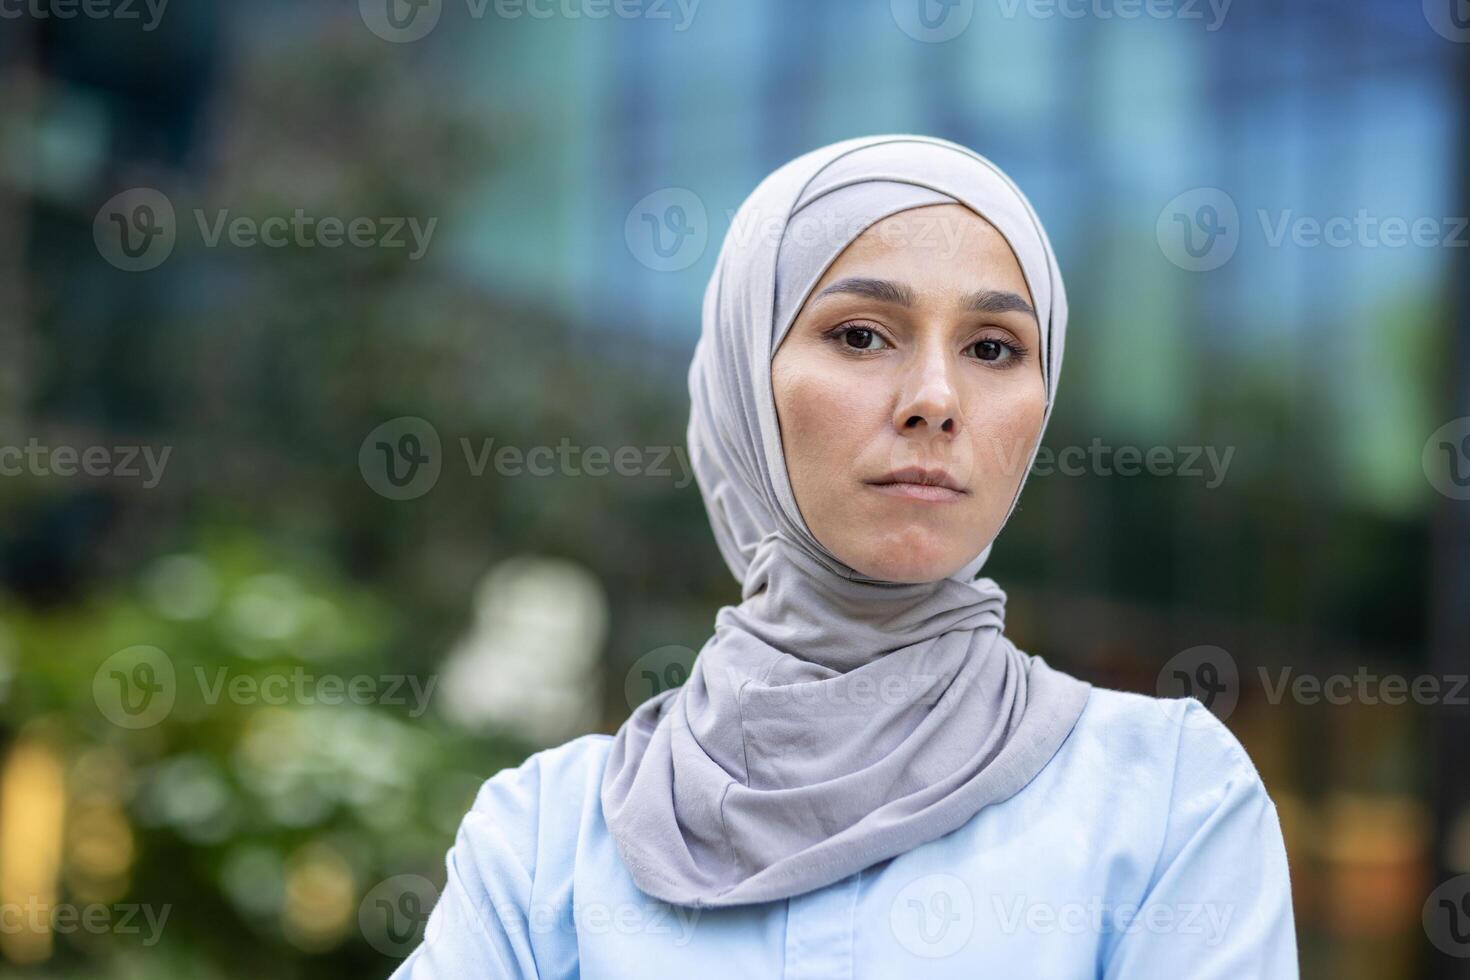 en modern muslim kvinna bär hijab står självsäkert i ett urban miljö, utsöndrar bemyndigande och mångfald. foto